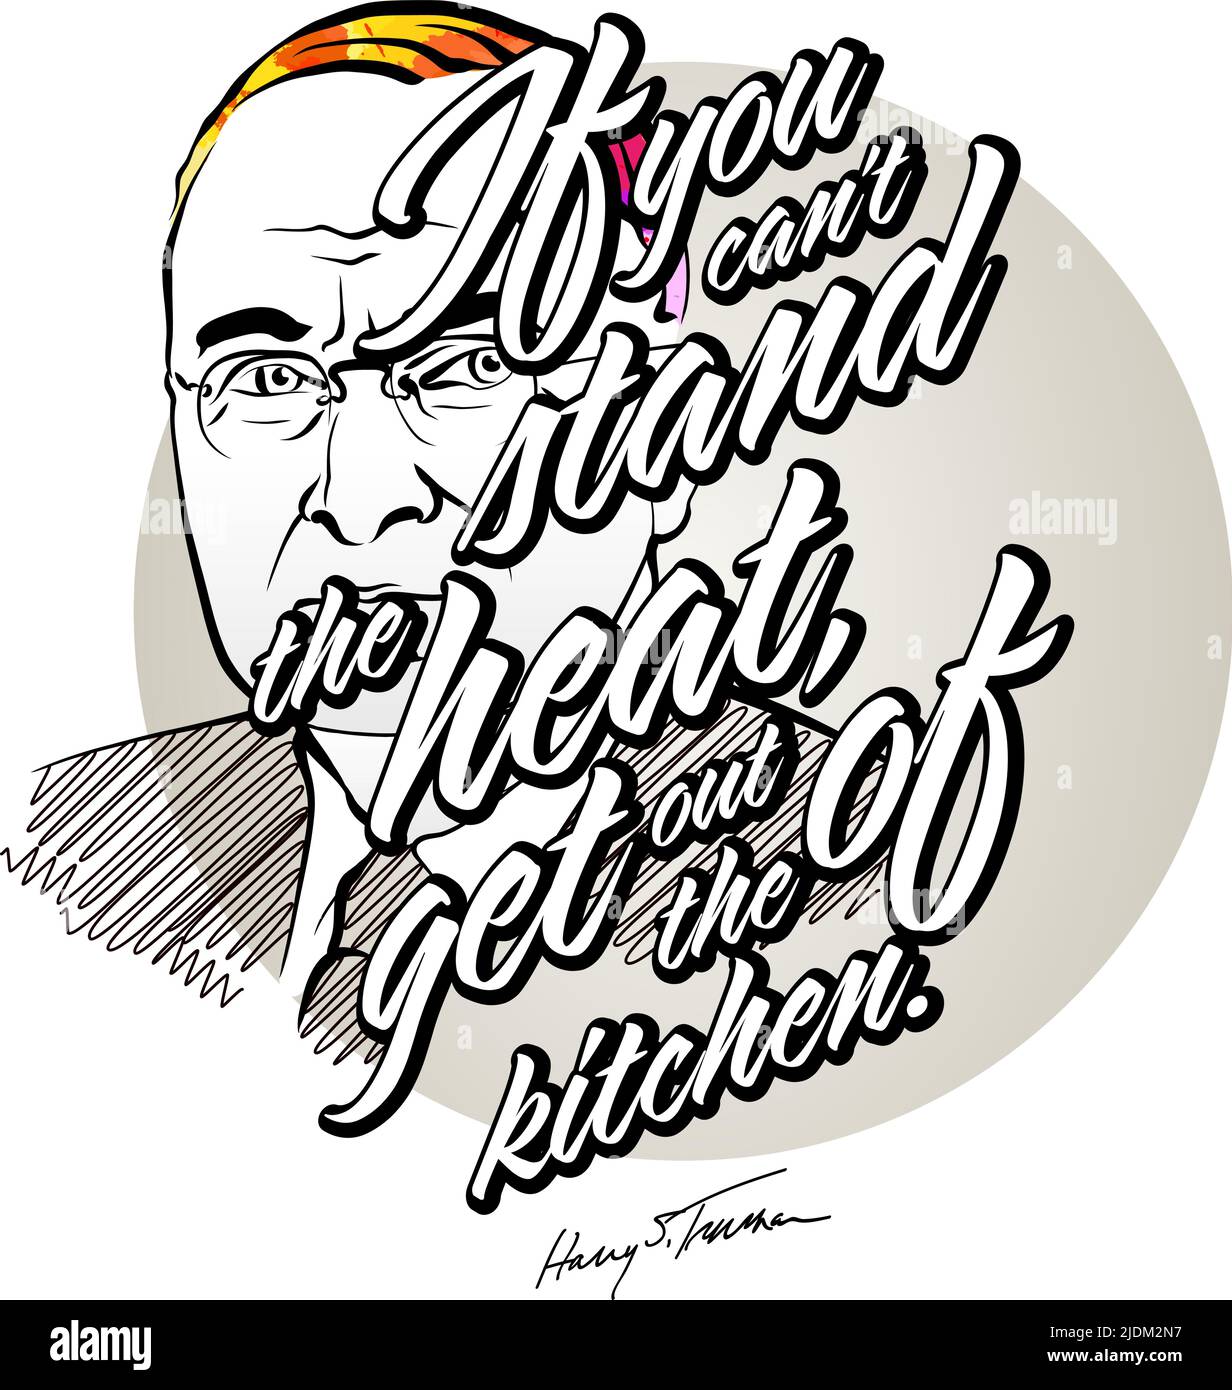 Harry S. Truman sagt mit Portrait. Vektorgrafikvorlage für Printdesign wie T-Shirts oder Poster. Stock Vektor